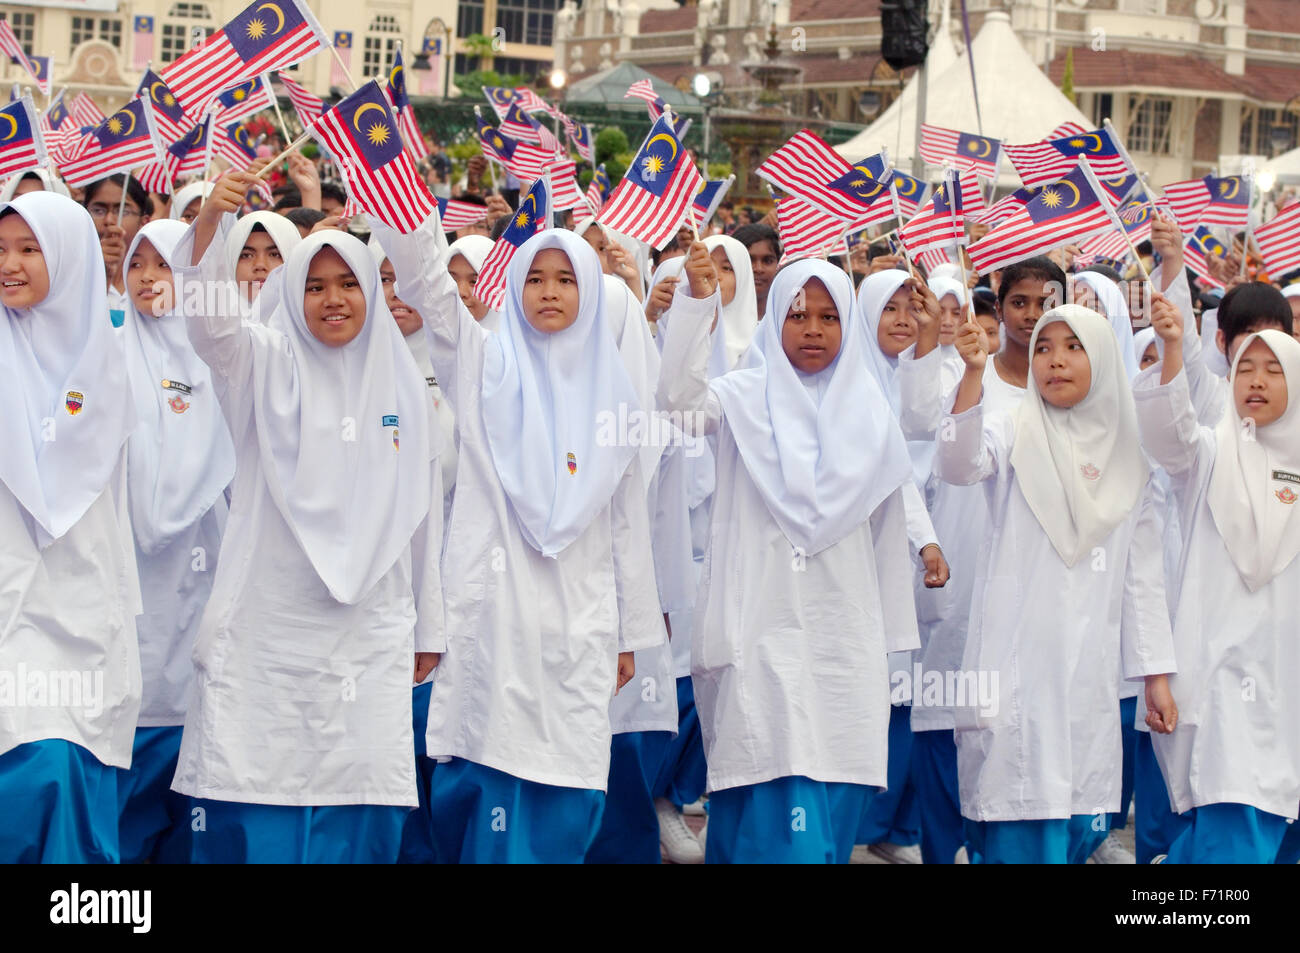 Bildung von jungen Frauen mit den Flaggen von Malaysia auf der Parade 16 September - Hari Merdeka (Unabhängigkeitstag) Kuala Lumpur, Mal Stockfoto